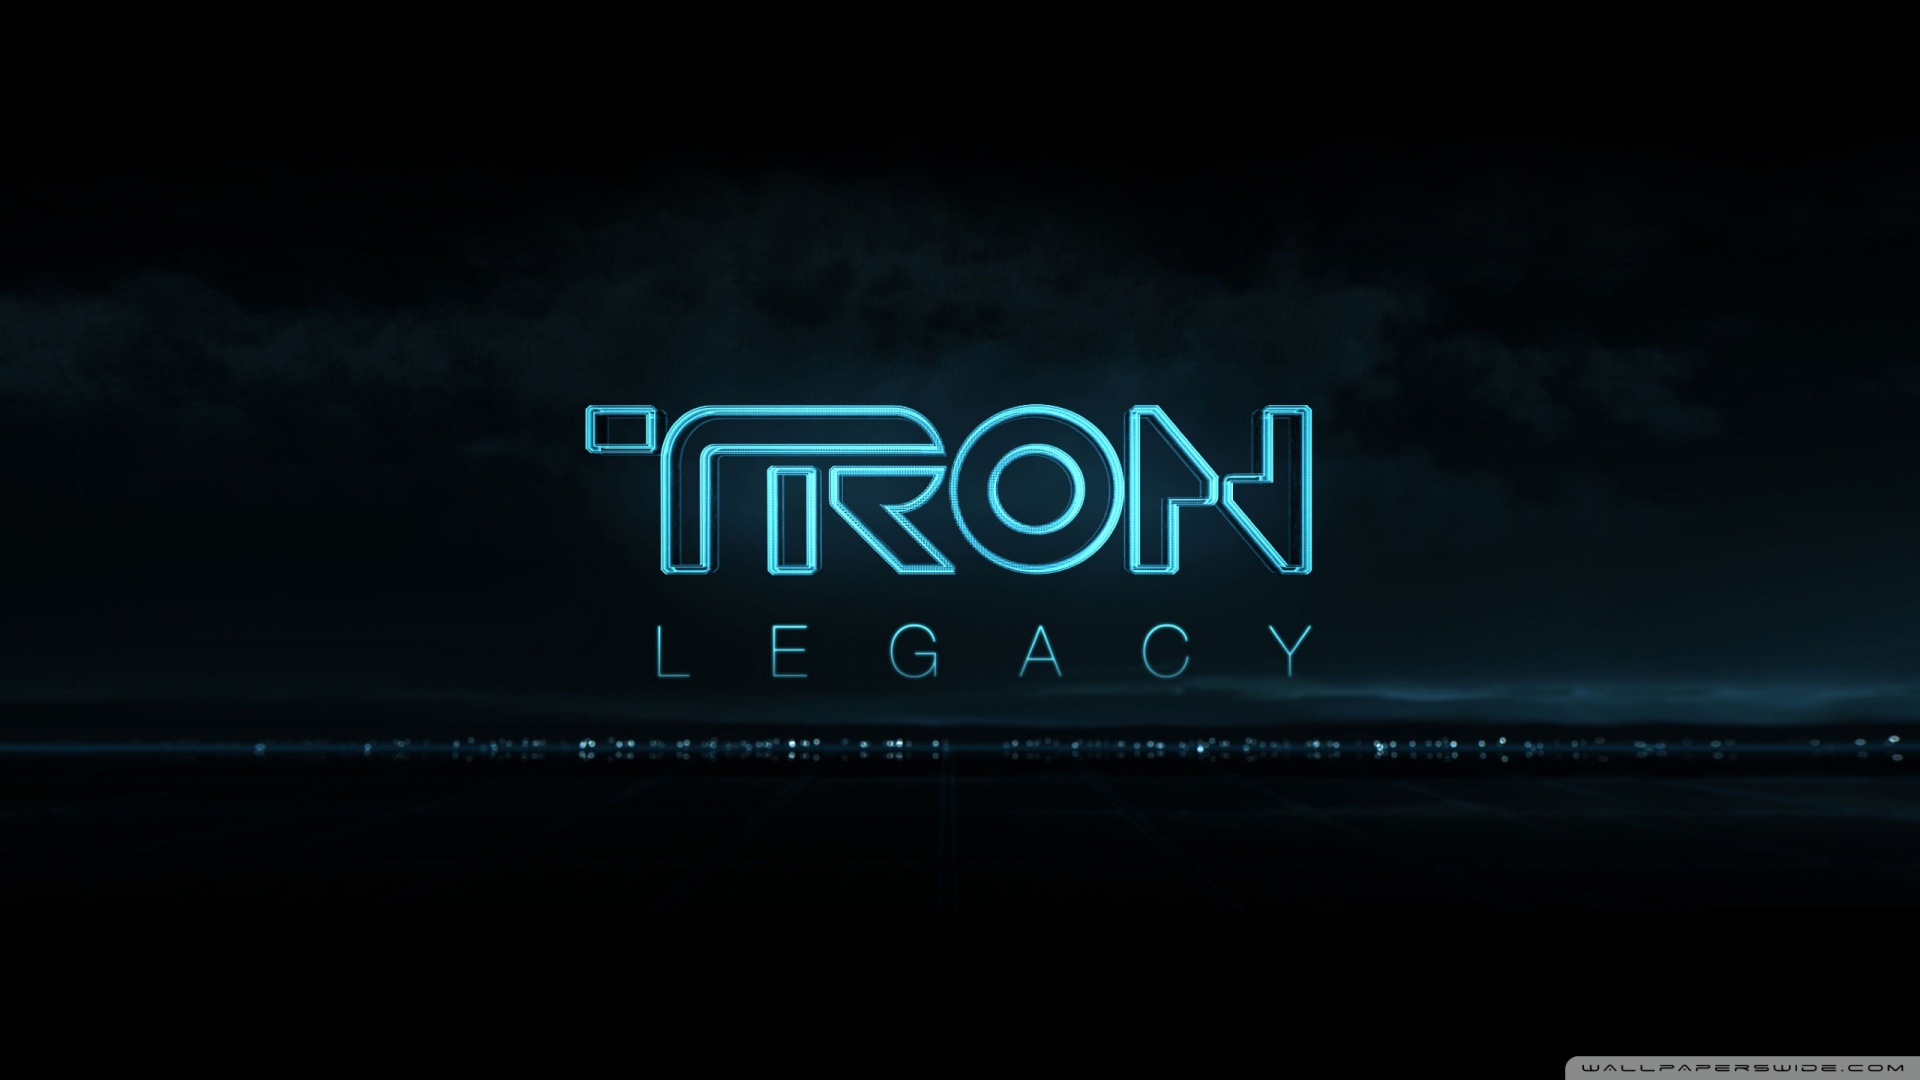 Tron Legacy 3 Wallpaper 1920x1080 Tron Legacy 3 1920x1080